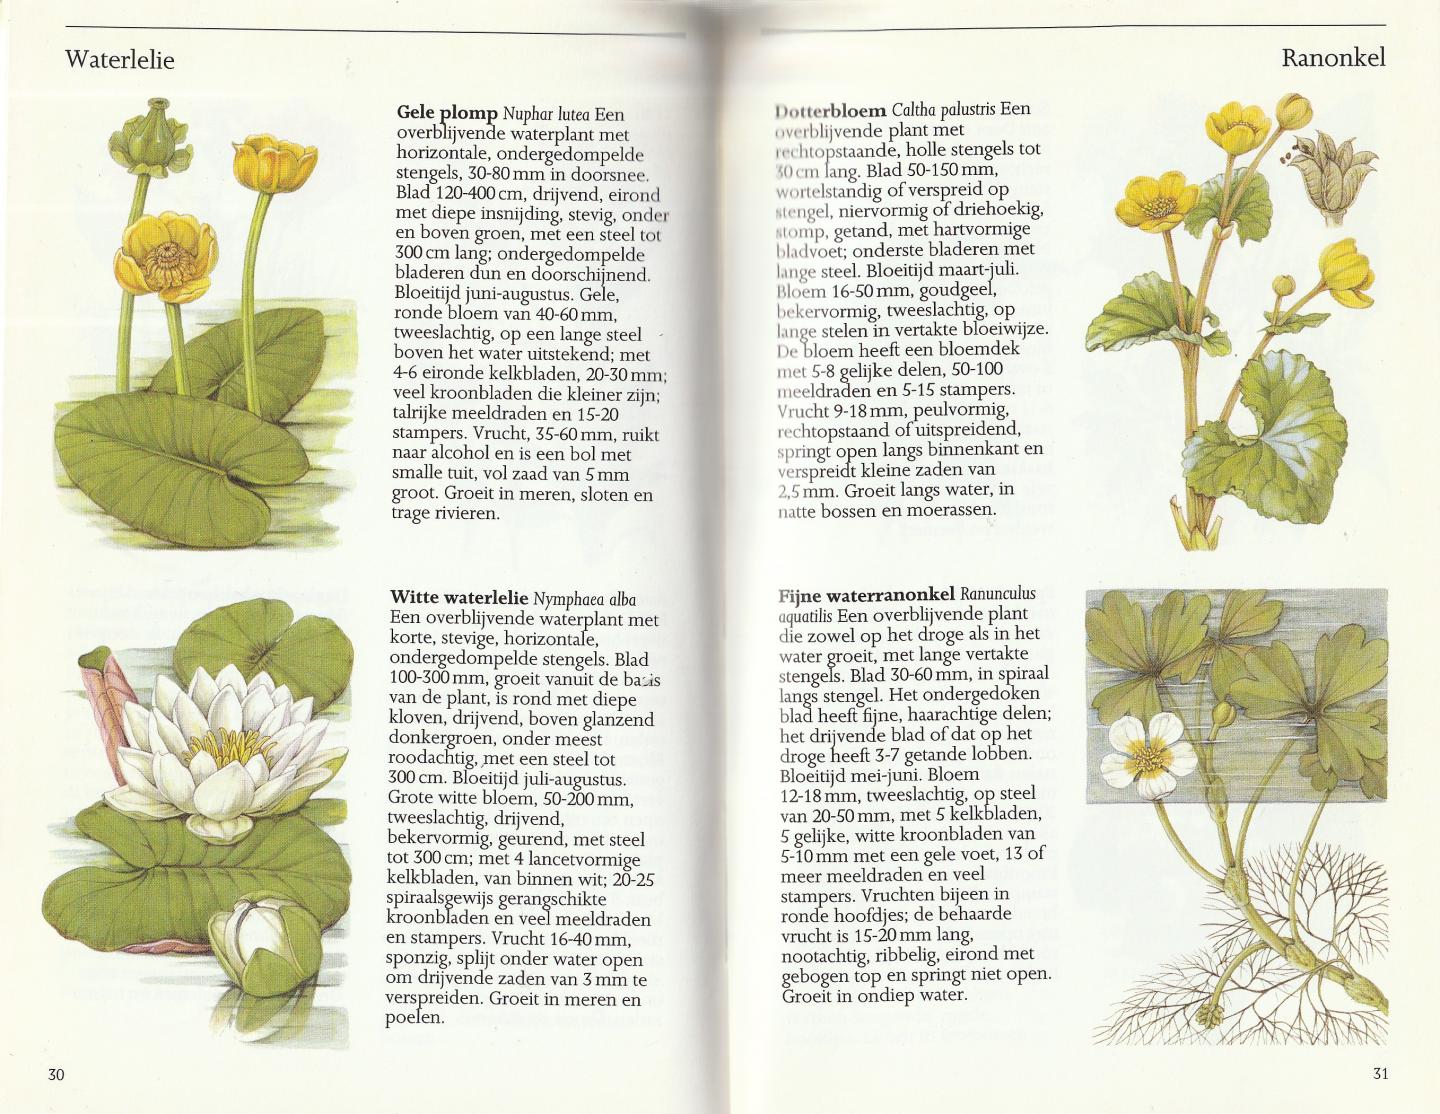 Sutton, David - Wilde bloemen in Europa